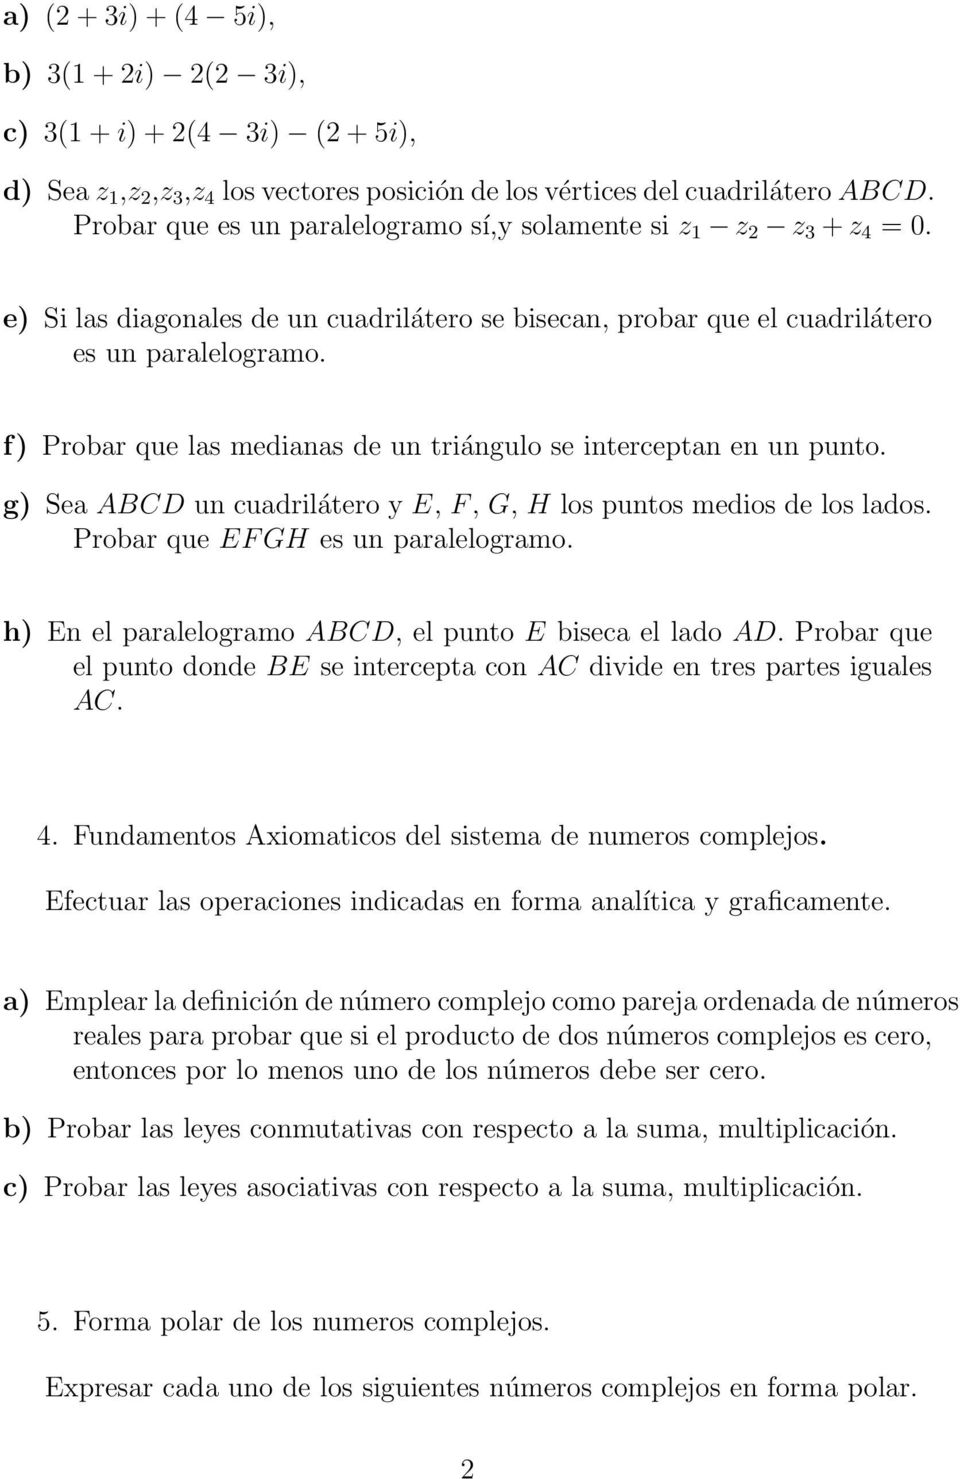 Banco De Ejercicios Del Departamental Metodos Matematicos Para